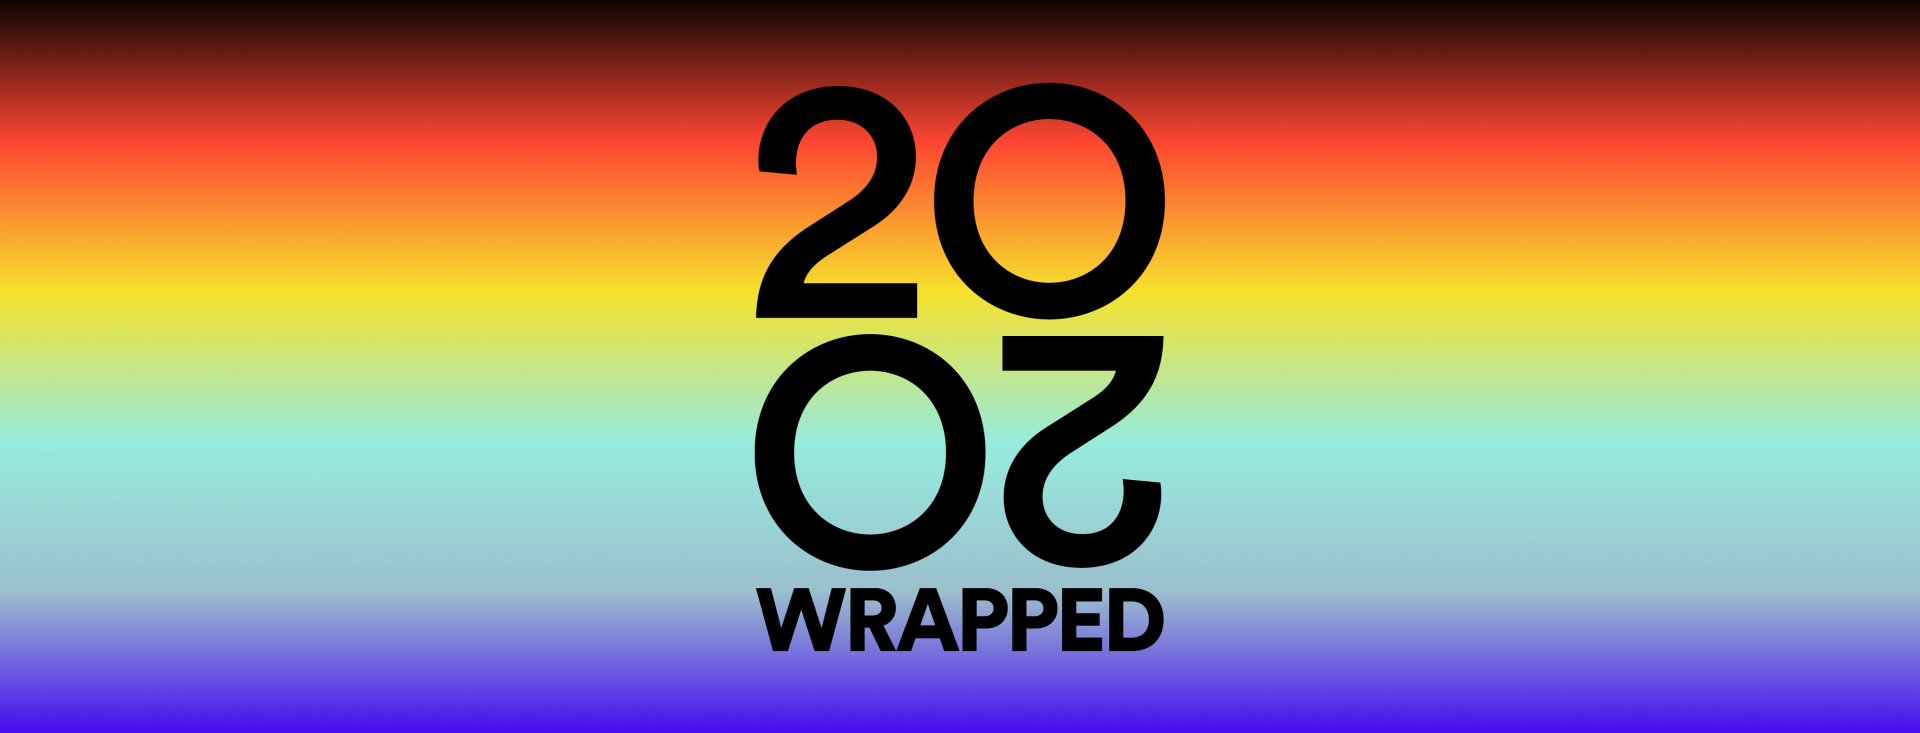 Spotify Wrapped, conoce qué música has escuchado y descubierto este 2020